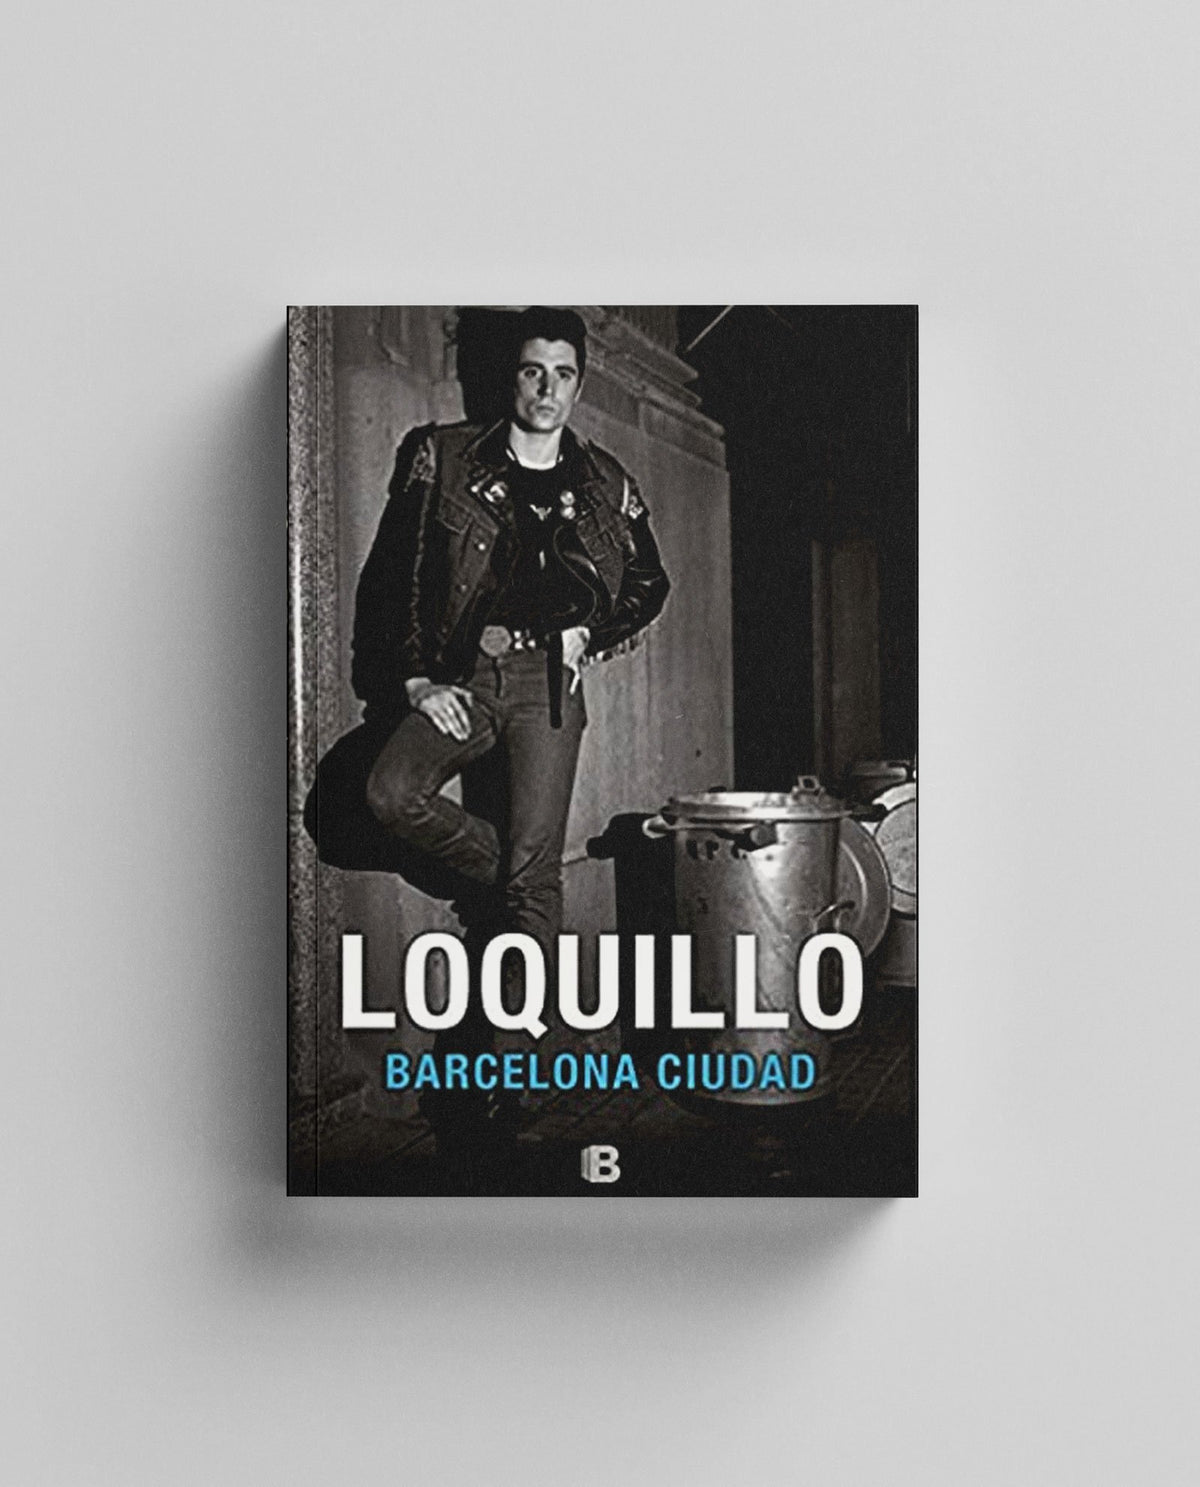 Libro "Barcelona Ciudad" Loquillo - Rocktud - Loquillo